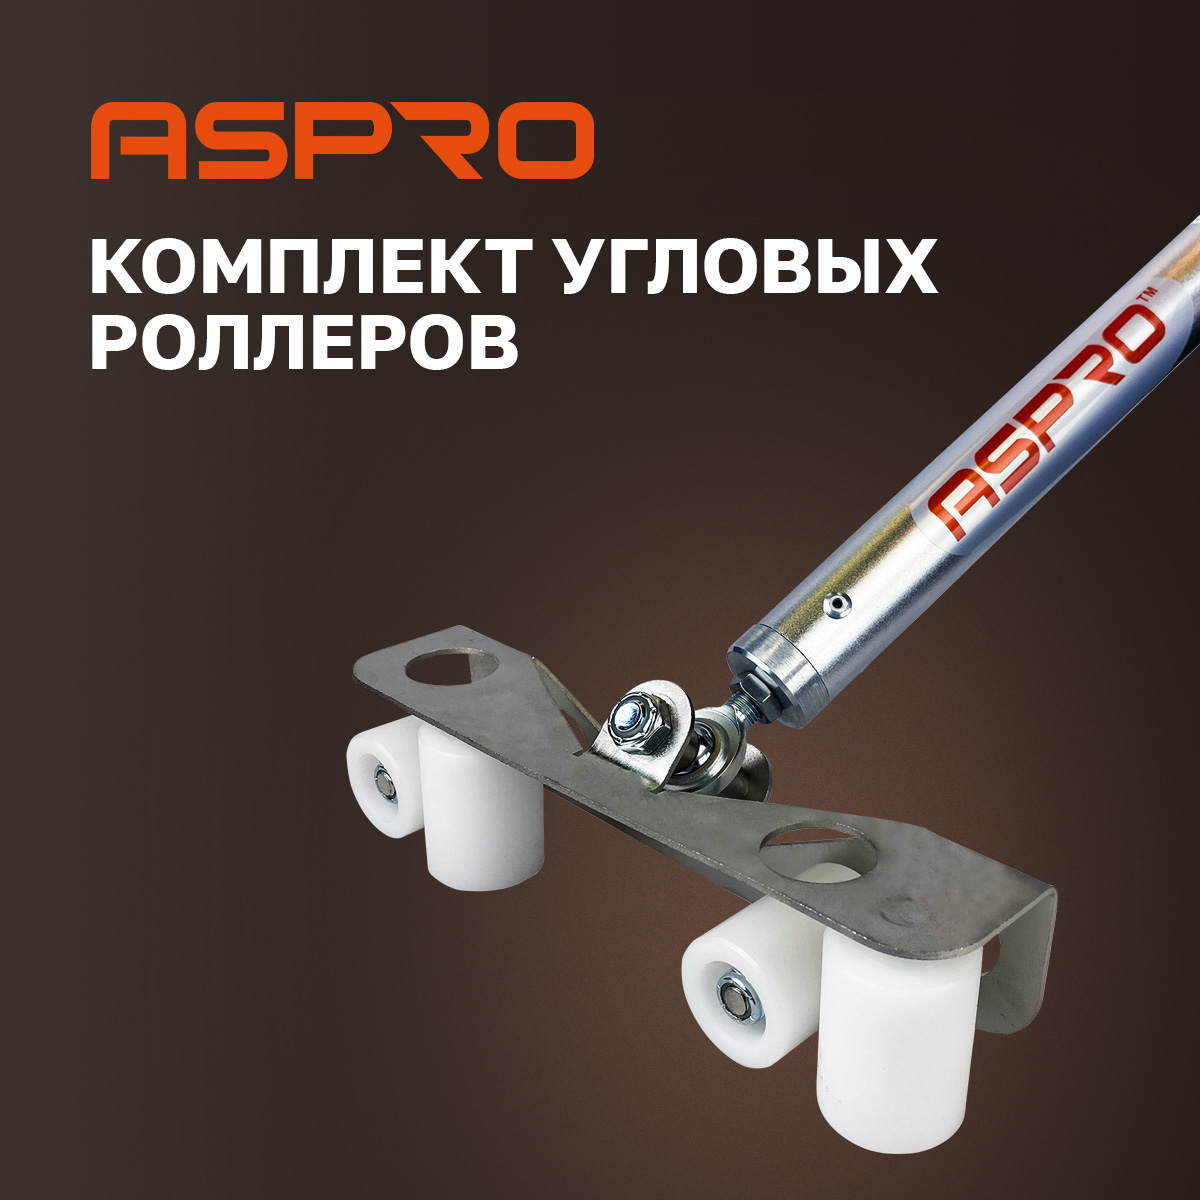 Комплект угловых роллеров Aspro, 102280